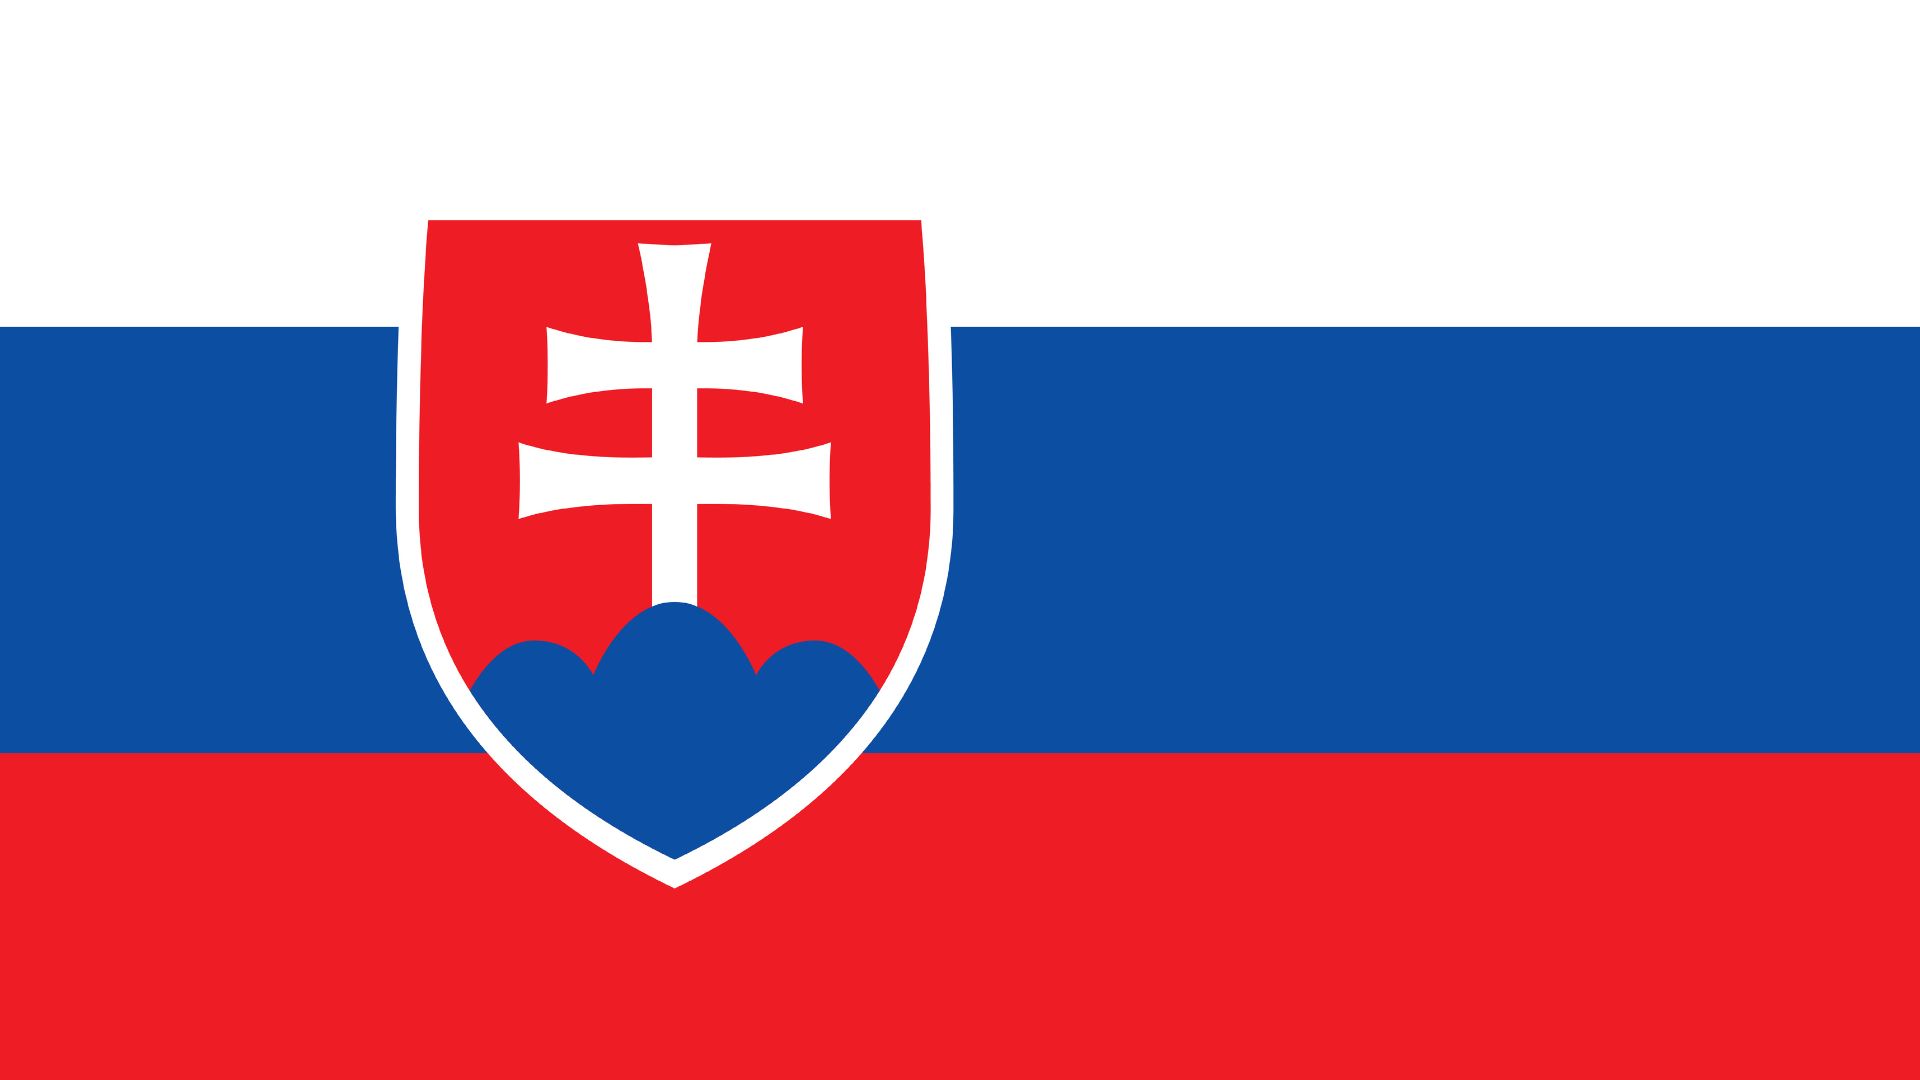 A bandeira da Eslováquia é composta por três faixas horizontais. A faixa superior é de cor branca, a central é azul e a inferior é de cor vermelho escuro. Na parte central da bandeira, aparece o brasão nacional.